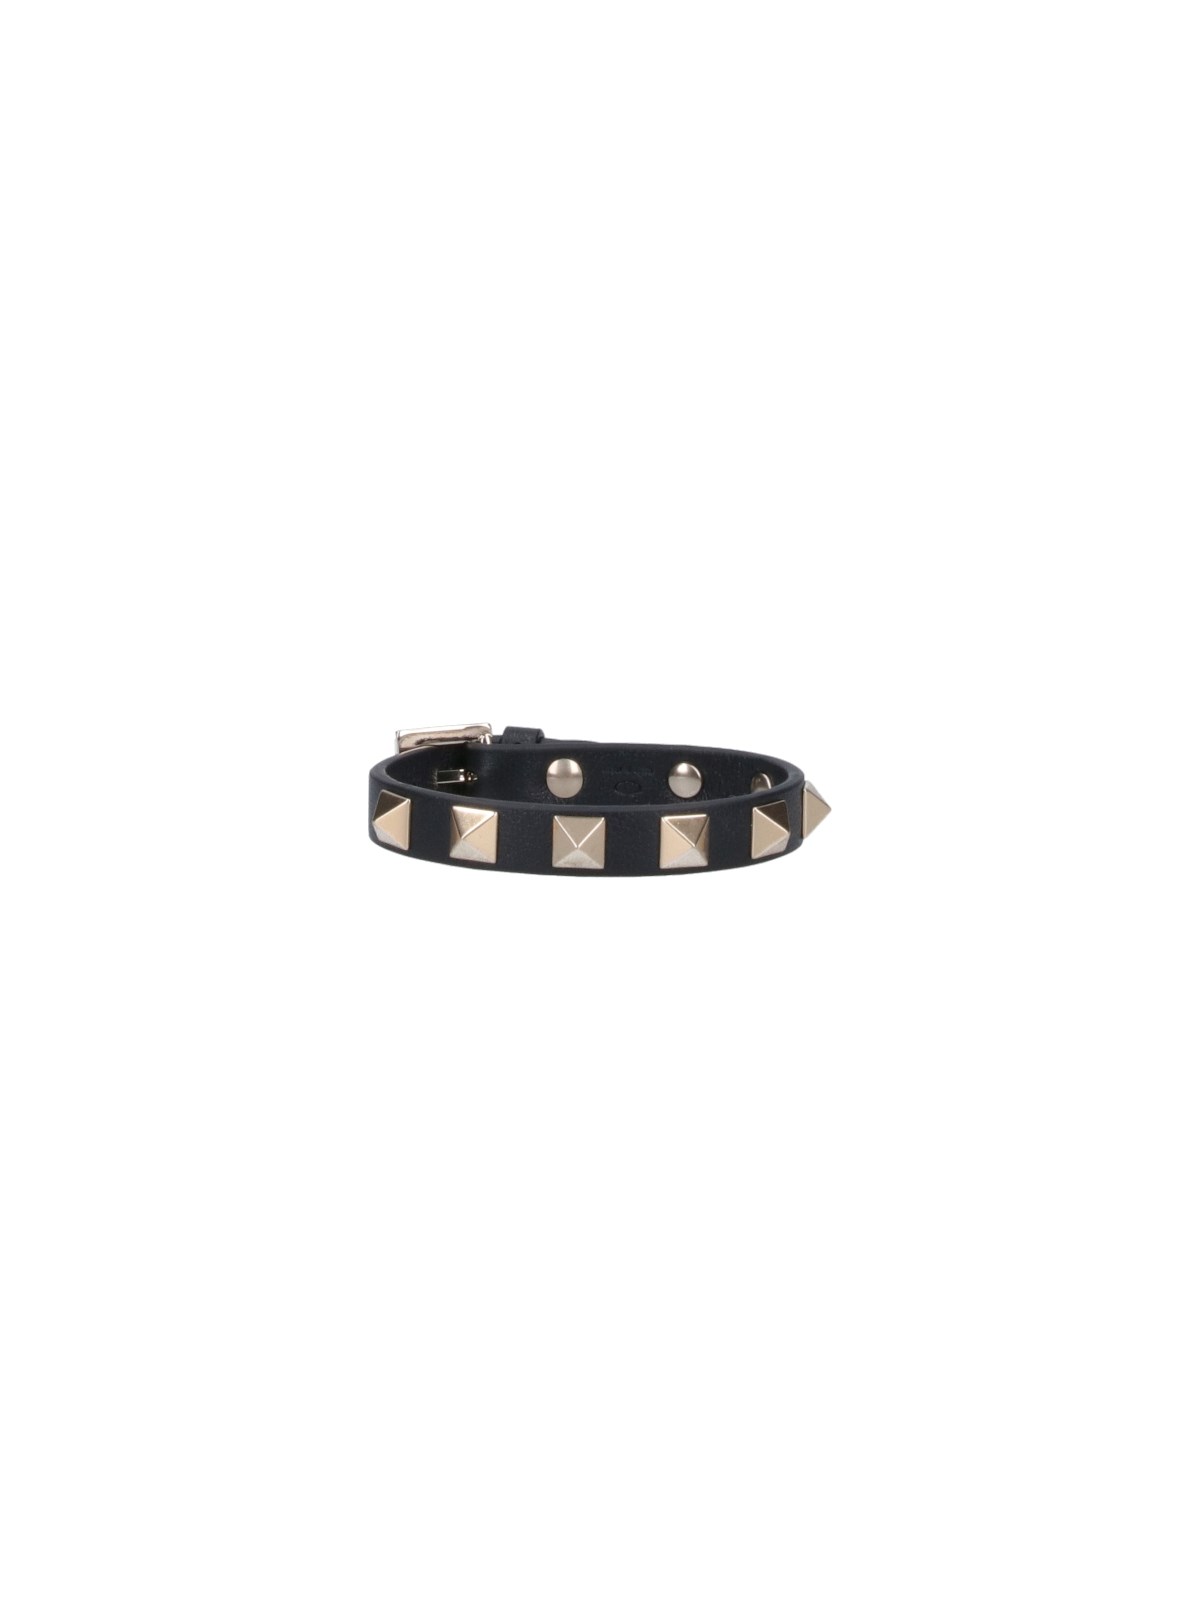 Valentino Garavani Rockstud Leather Bracelet In Black  